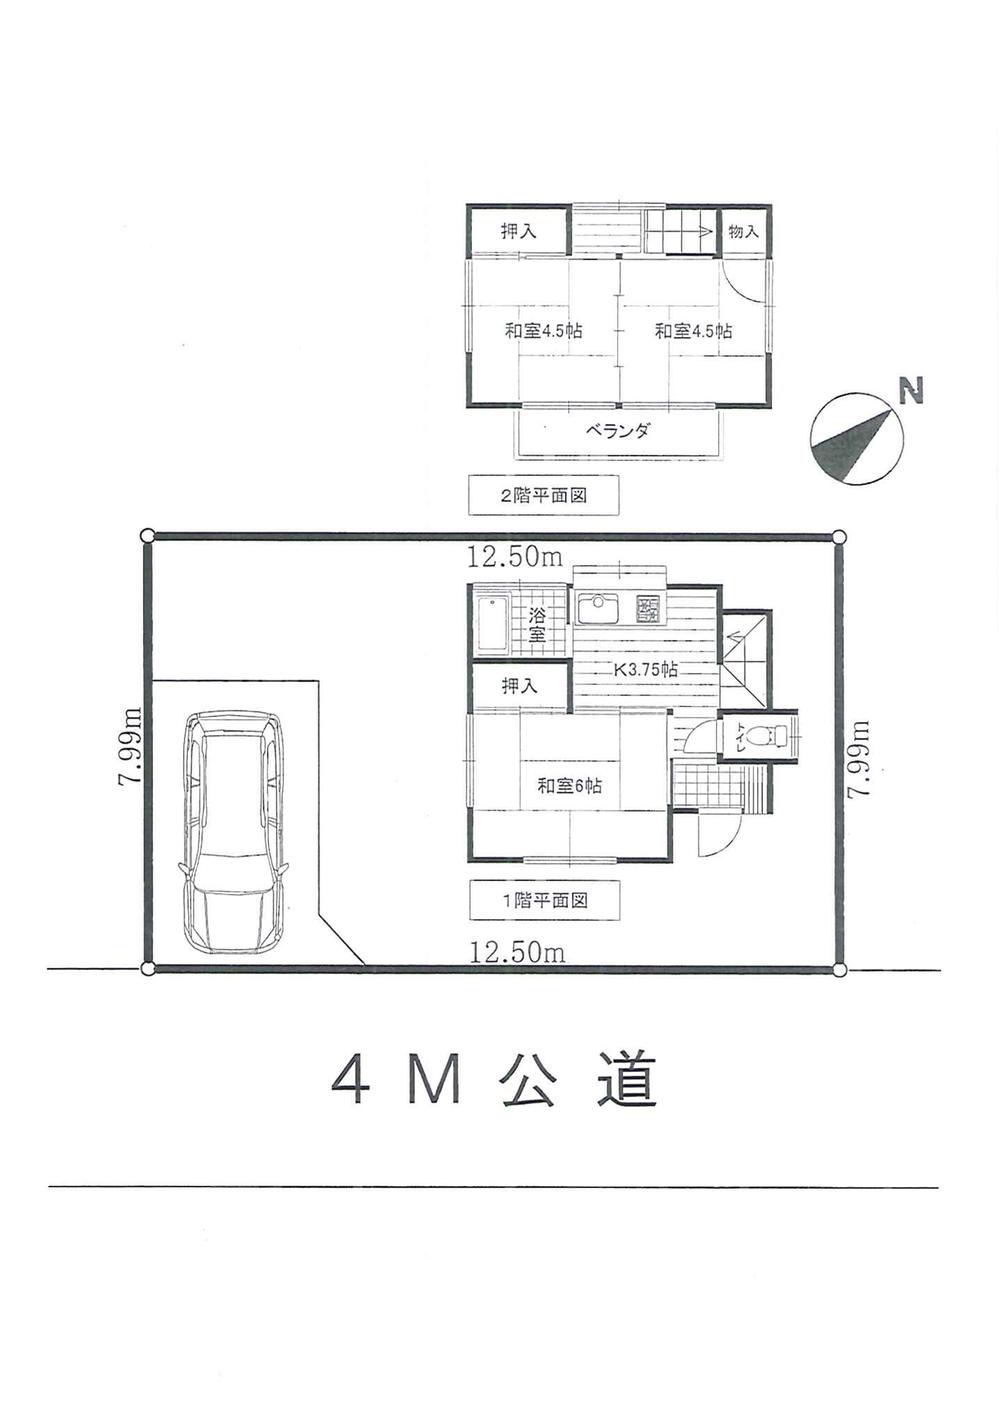 Floor plan. 5 million yen, 3K, Land area 99.87 sq m , Building area 45.81 sq m